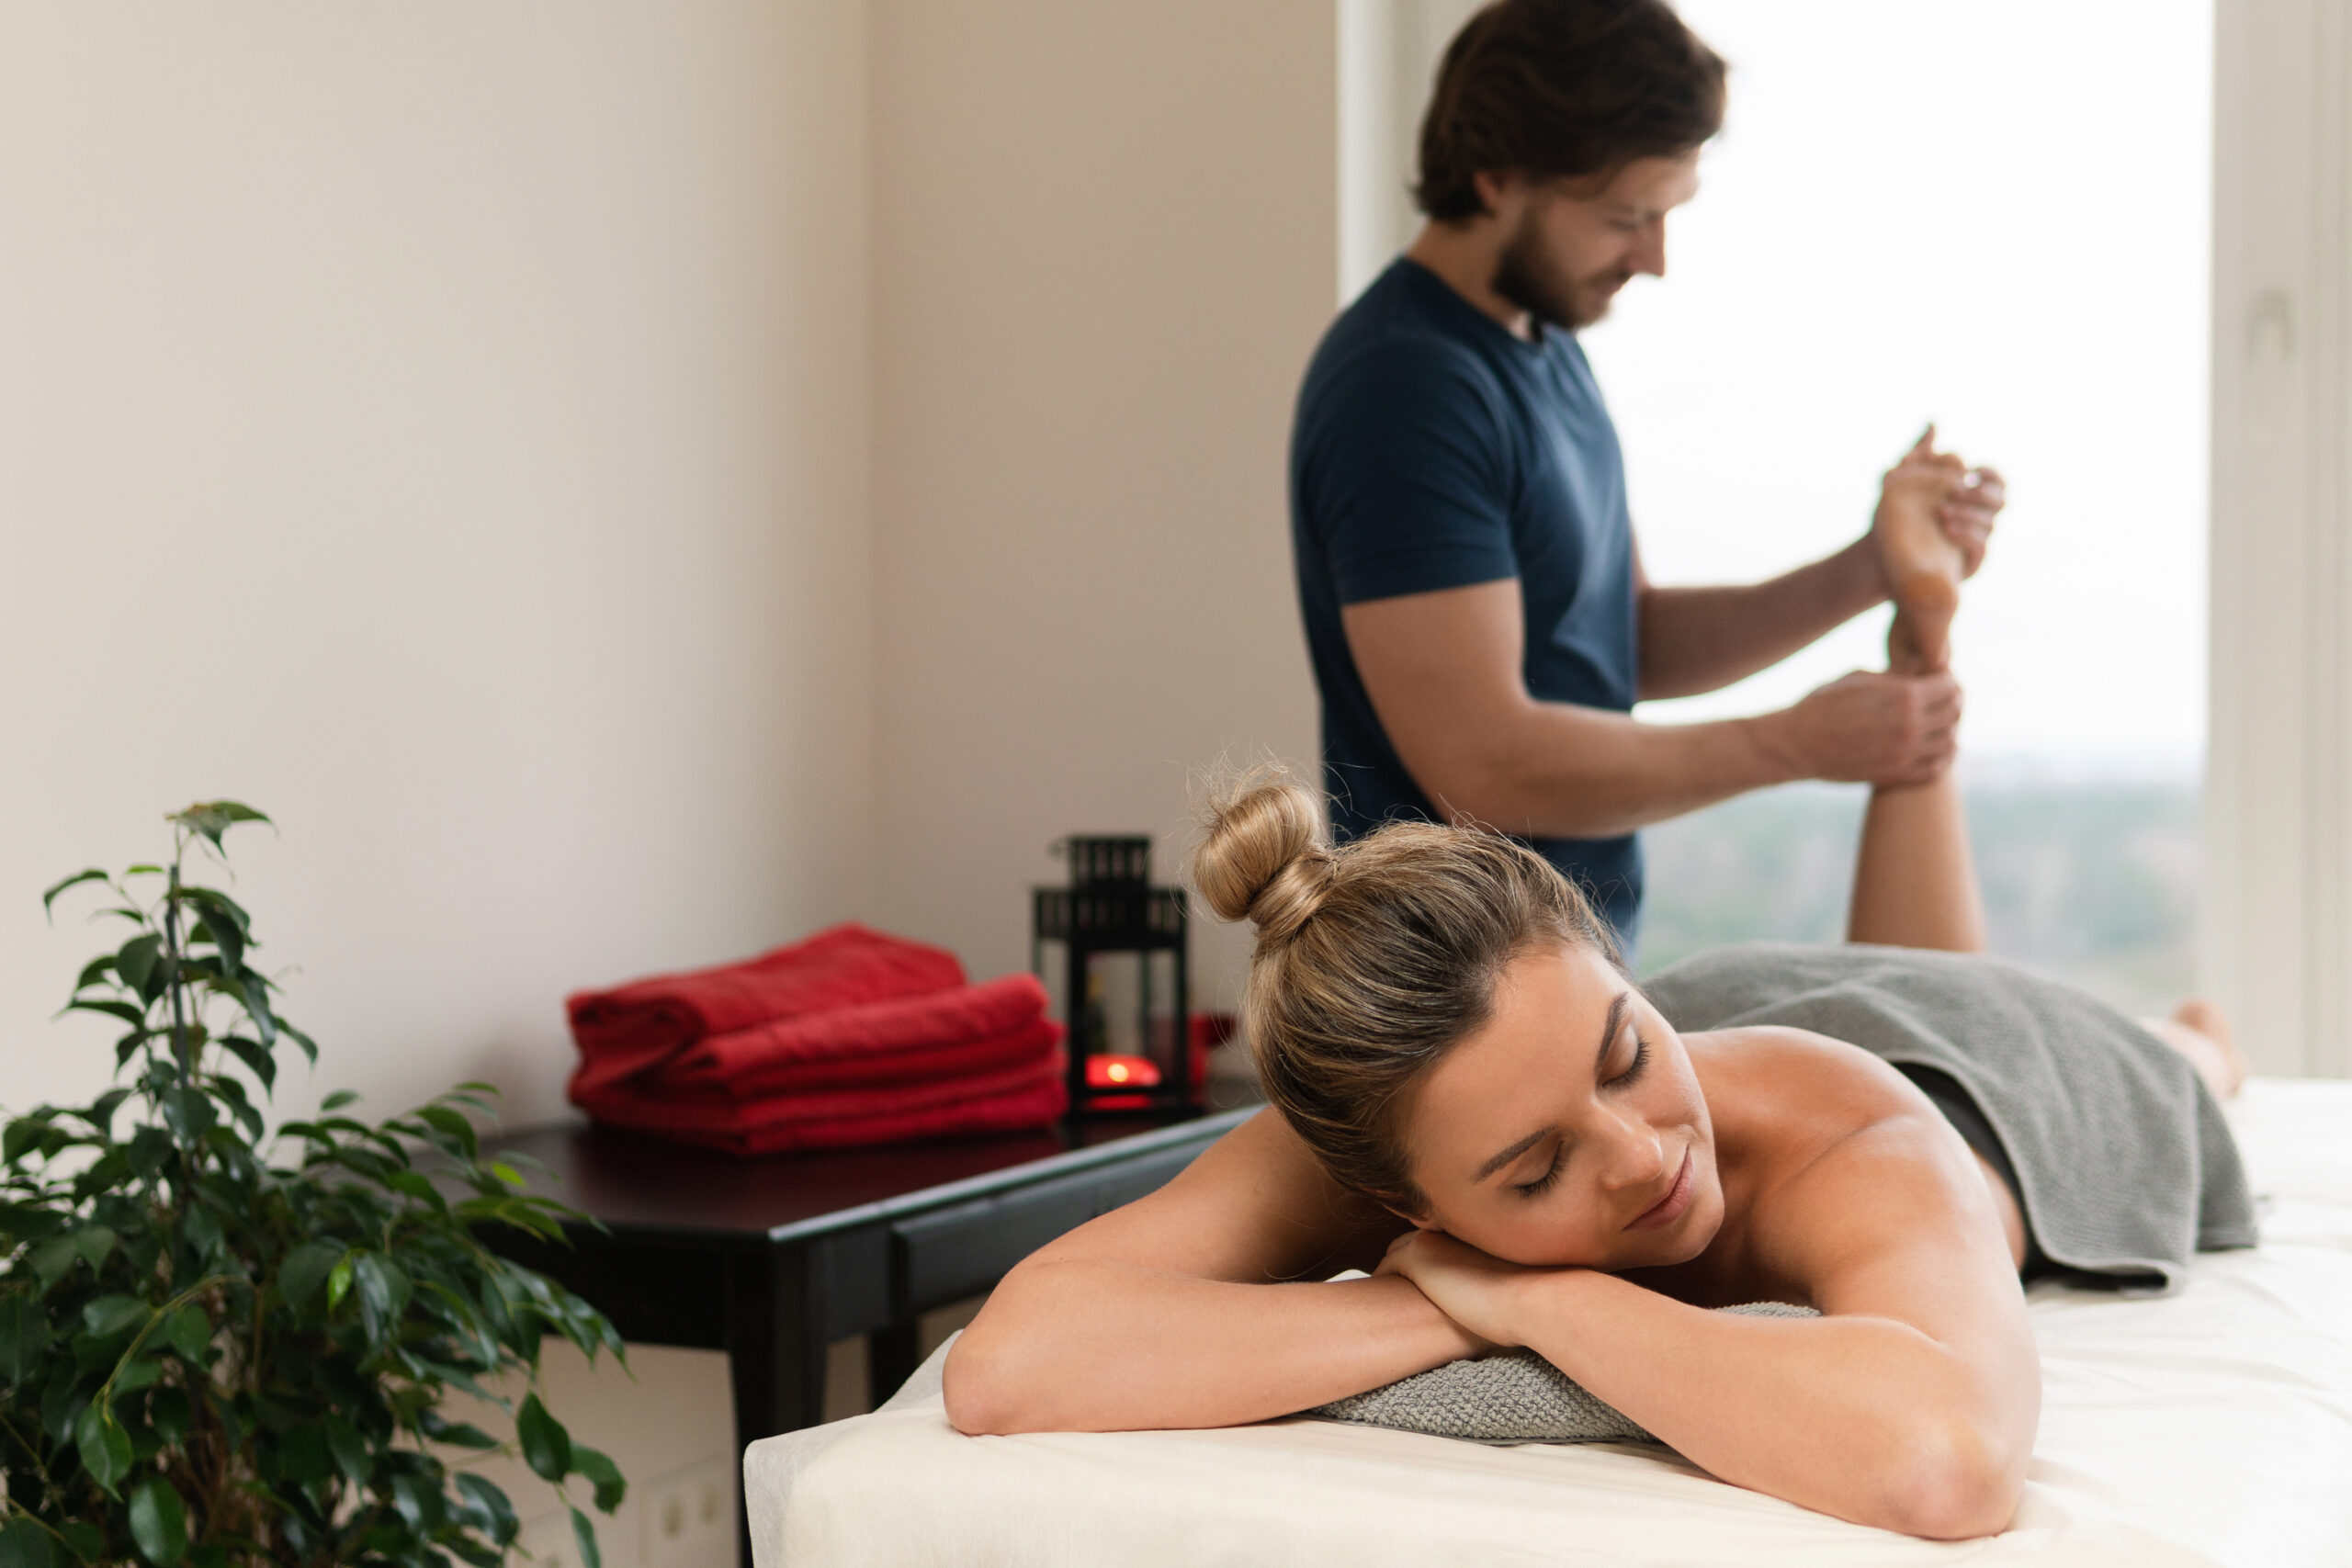 Mastering Massage: Neck & Shoulders. A Couples Self-Care Workshop